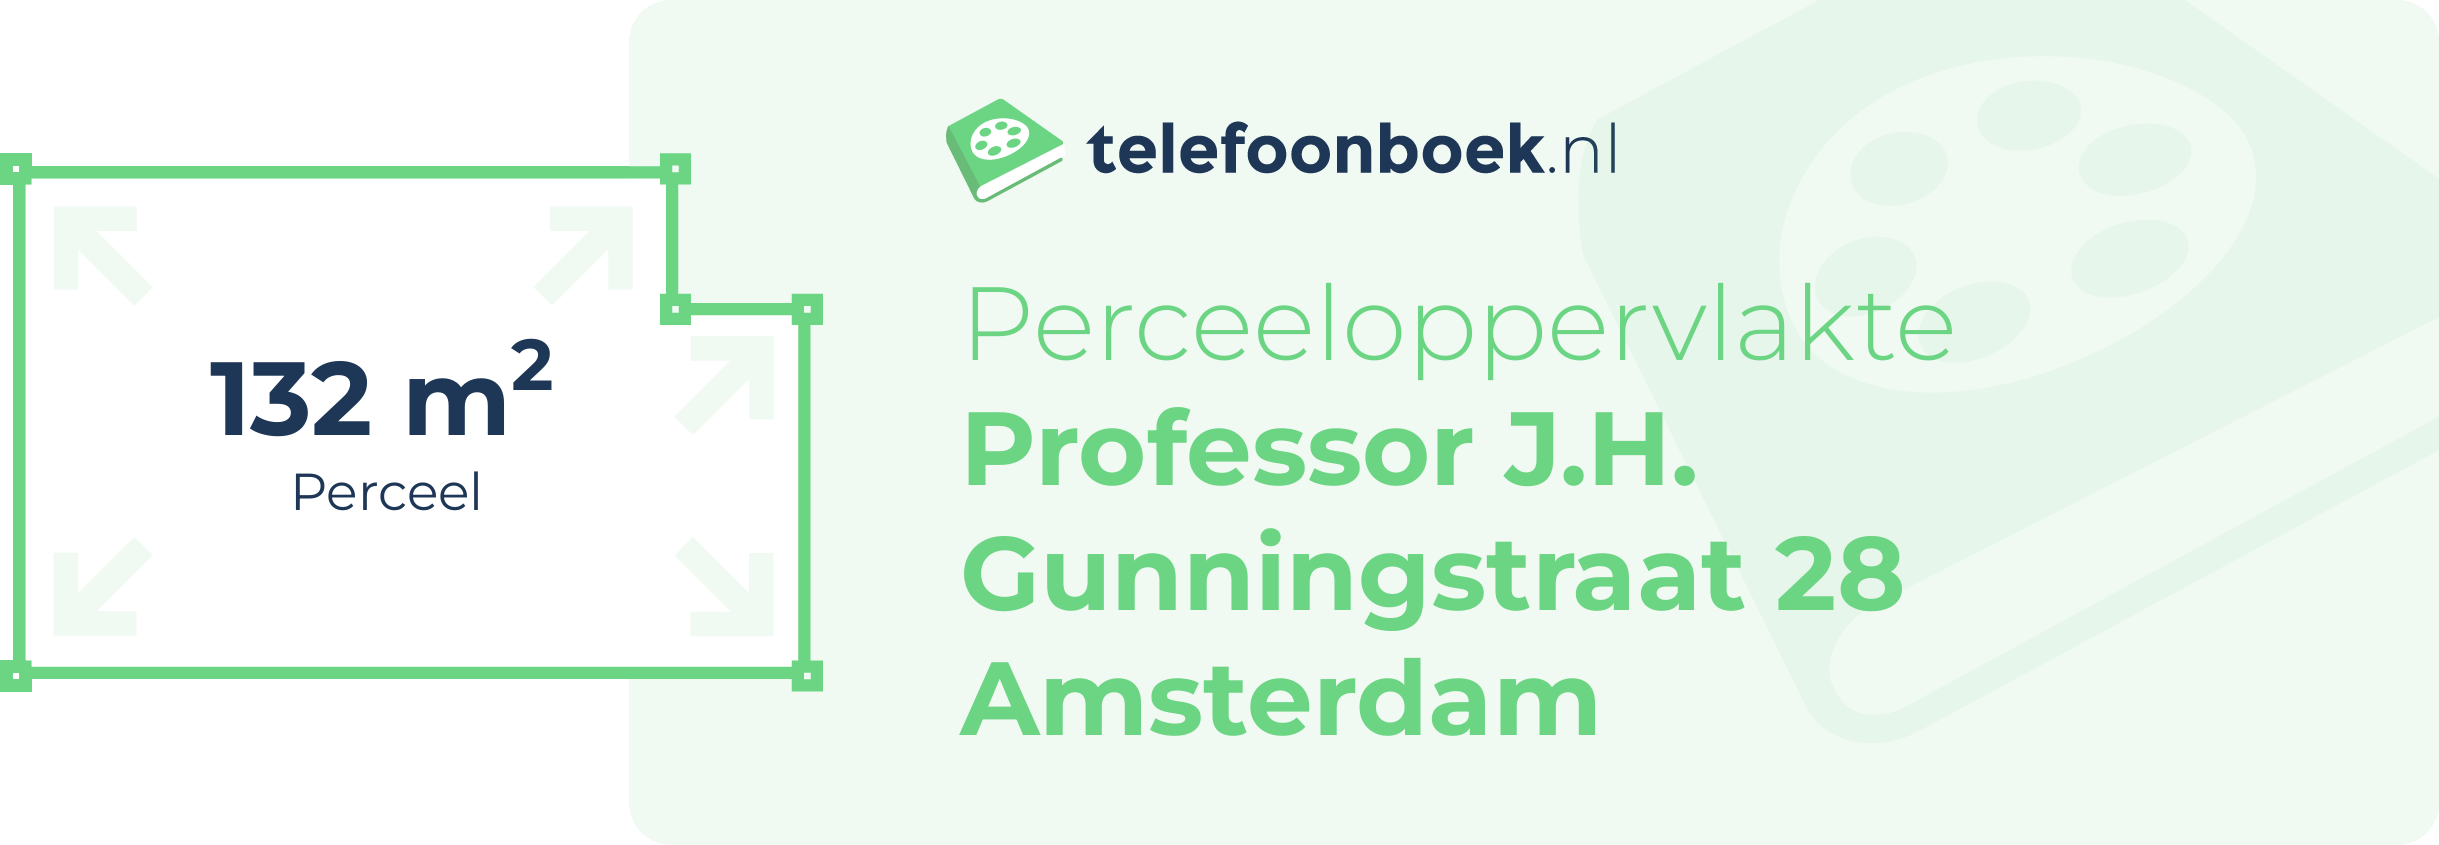 Perceeloppervlakte Professor J.H. Gunningstraat 28 Amsterdam